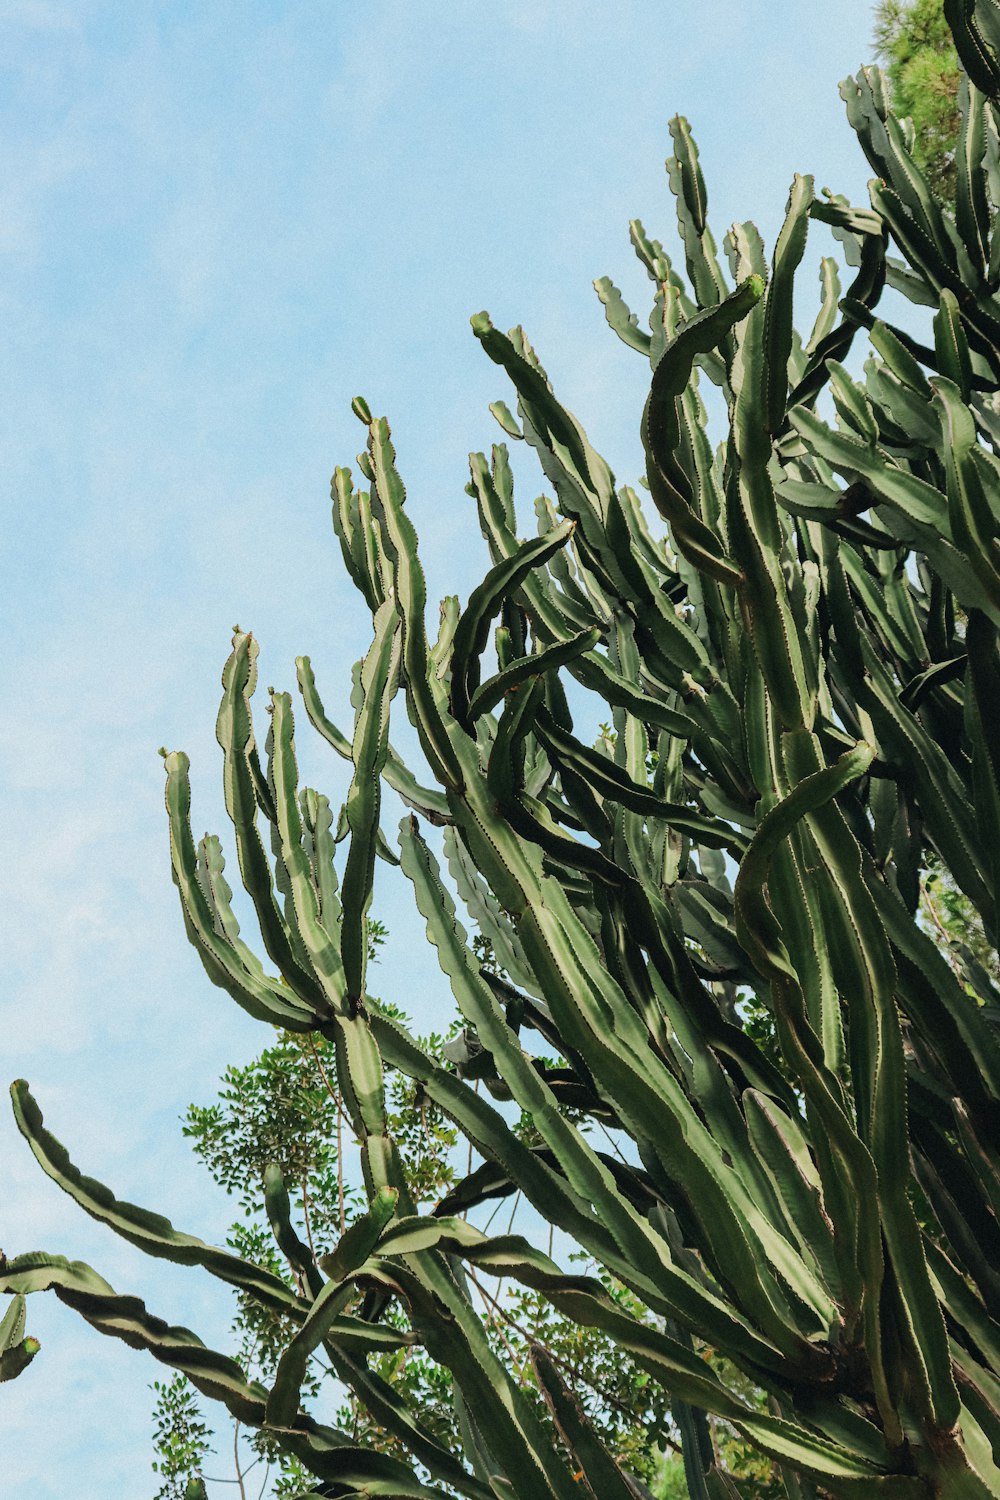 Un grand cactus avec beaucoup de feuilles vertes